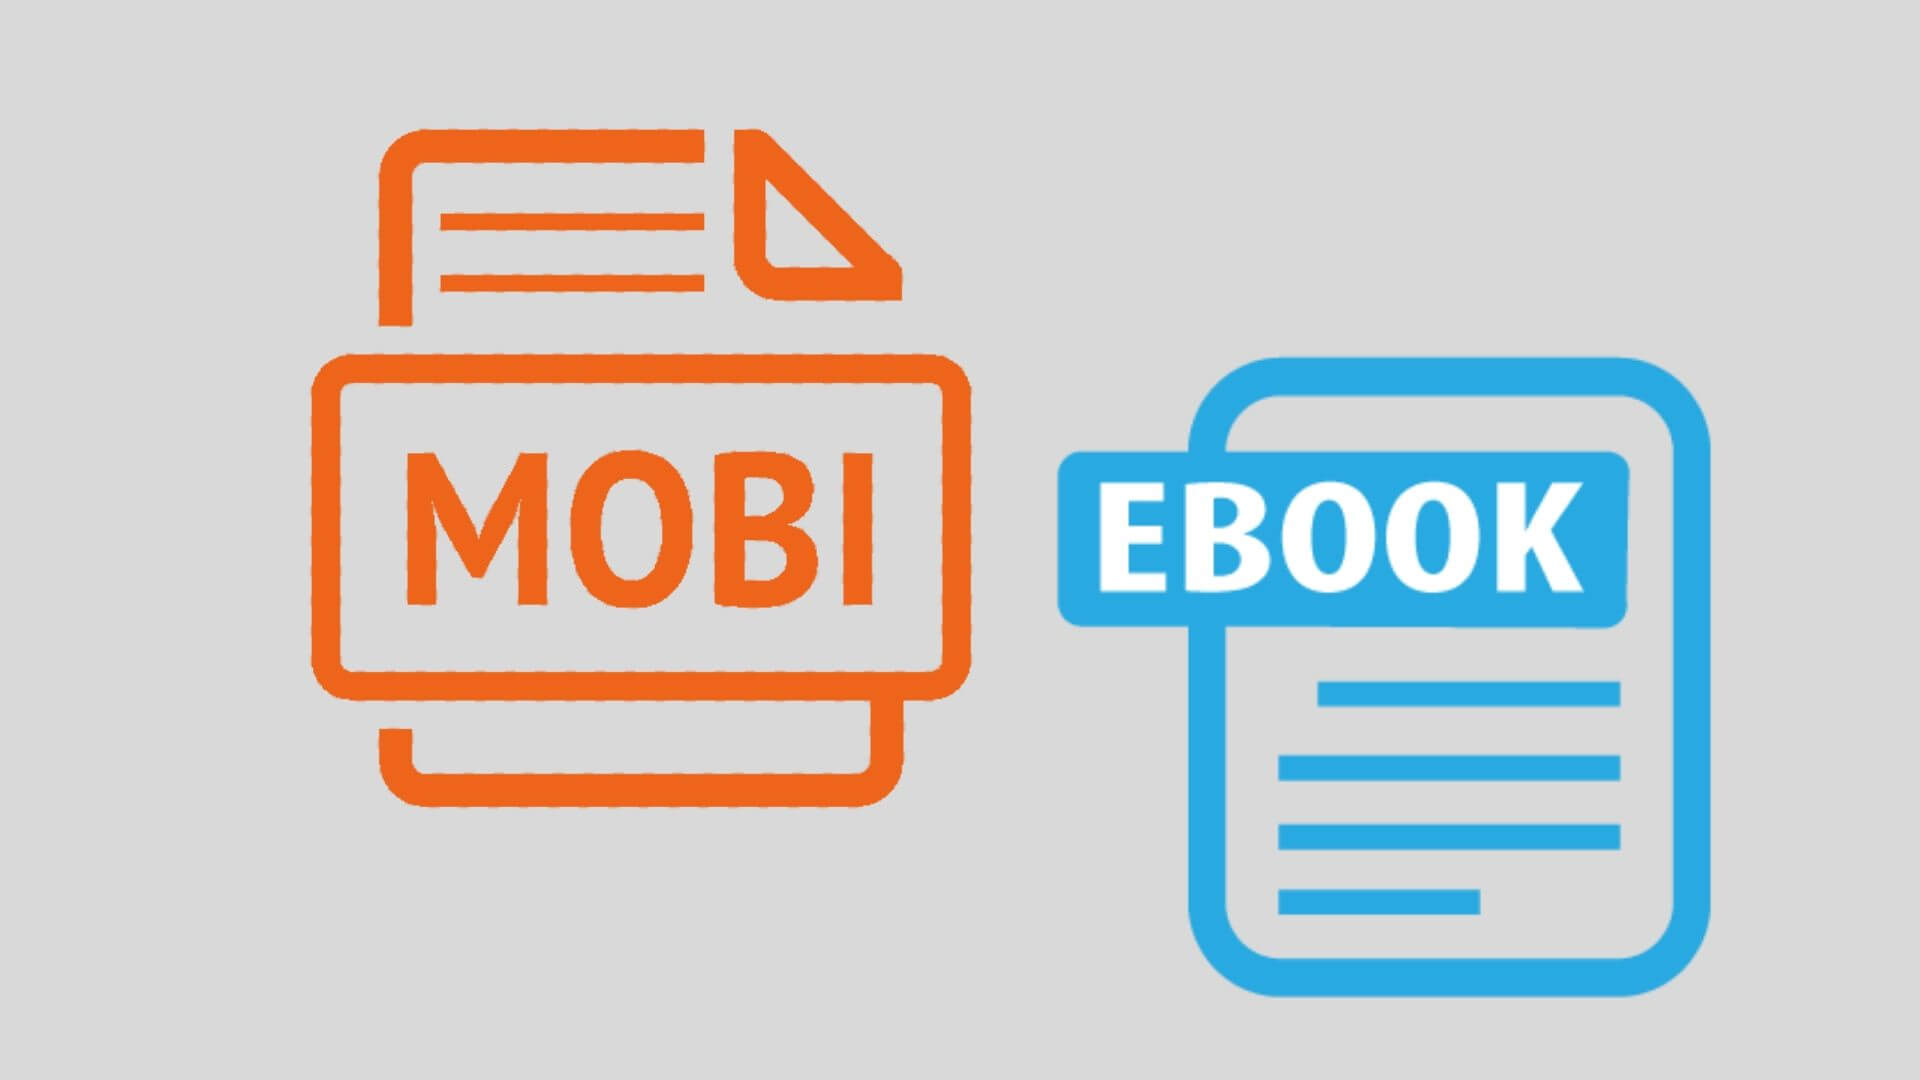 Mobipocket file Format for eBooks